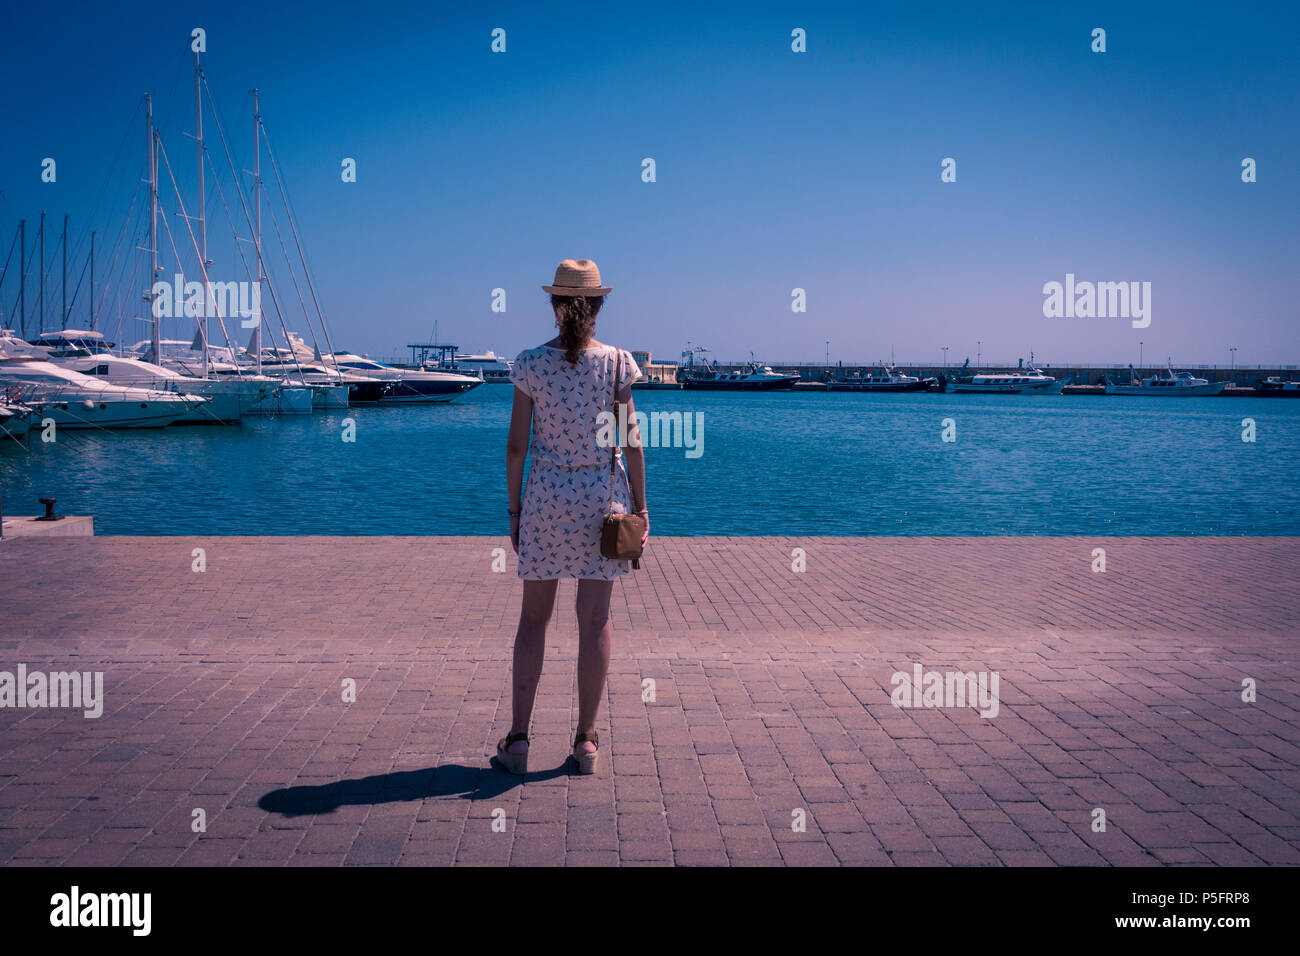 Jeune femme touristiques en méditerranée port de Cambrils, Tarragona, Espagne. Seascape pittoresque marina de yachts et voiliers. Promenade publique et famo Banque D'Images